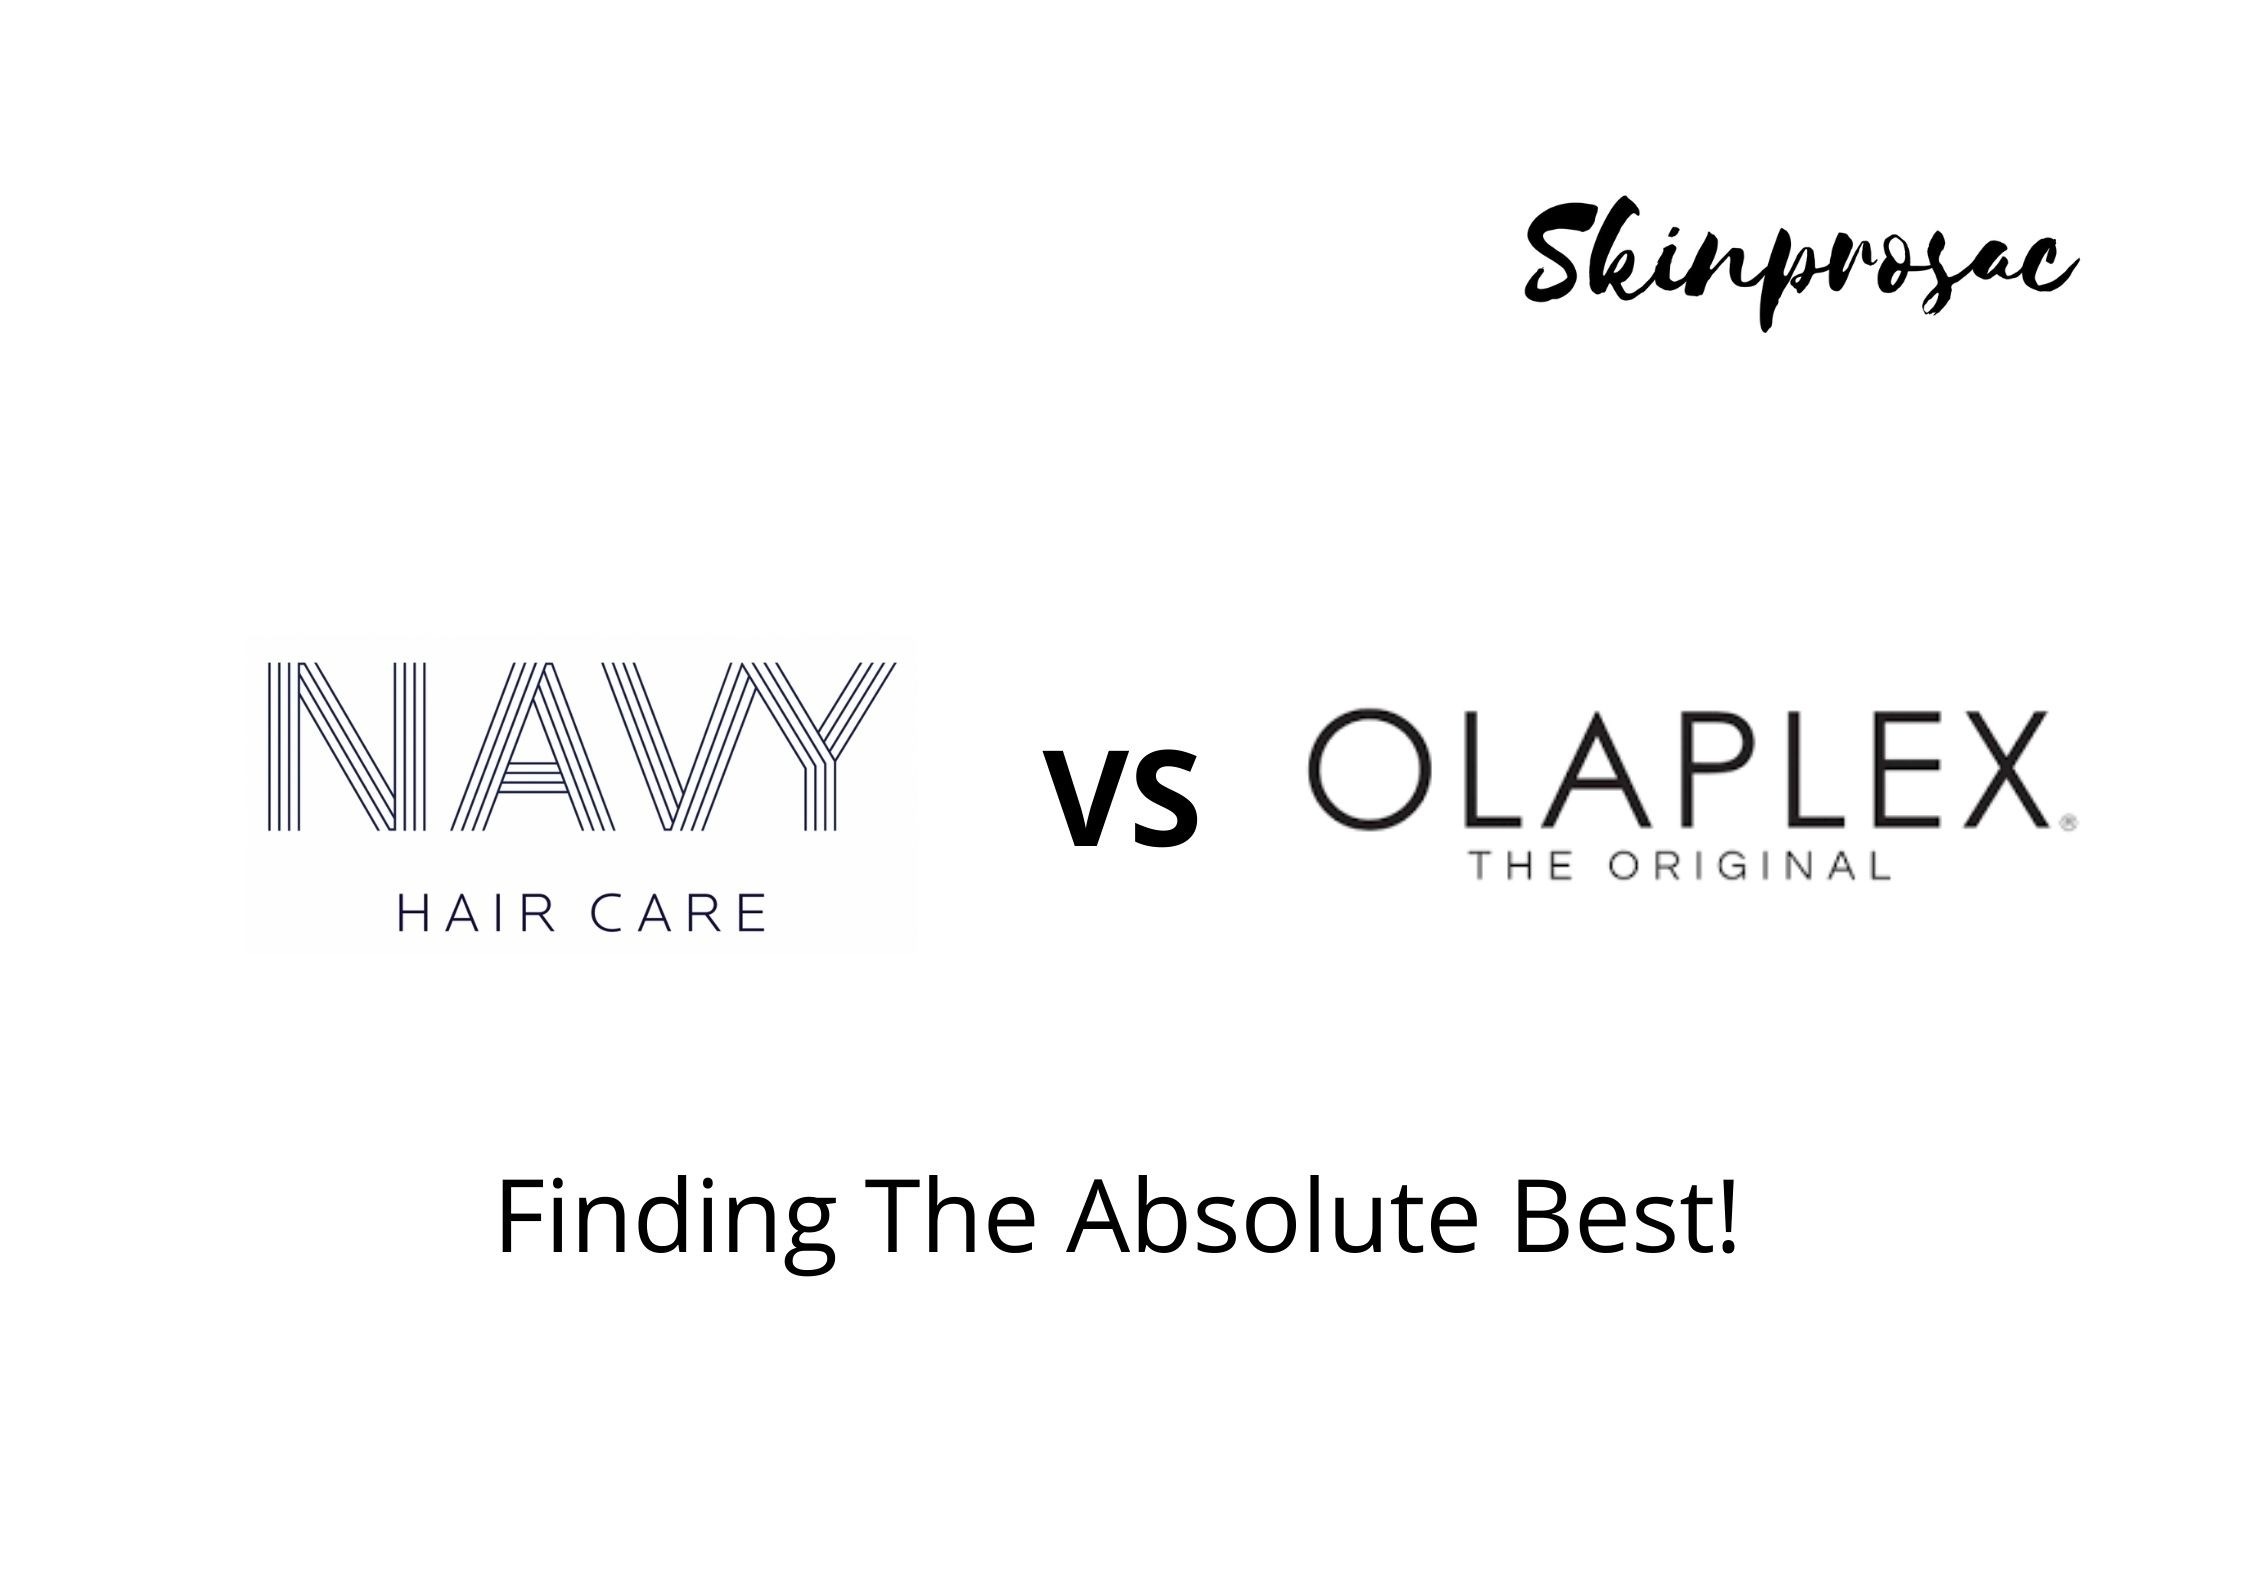 Navy Hair Care VS Olaplex